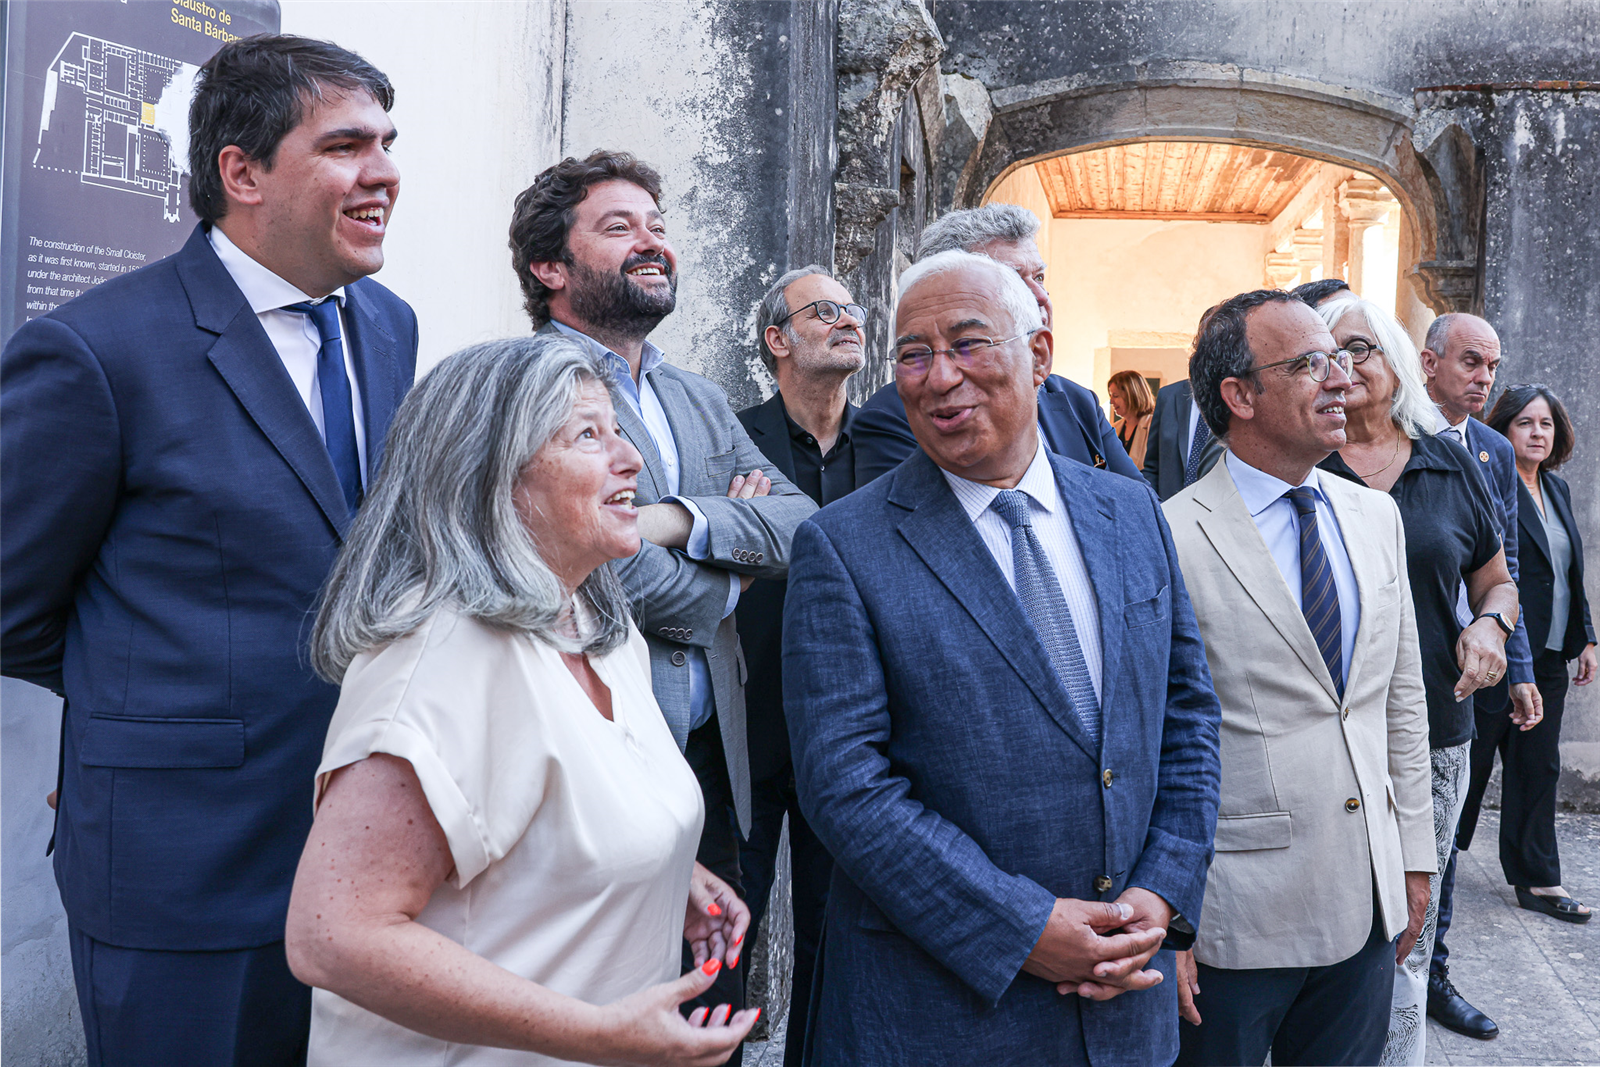 Convento de Cristo em Tomar recebeu visita do Primeiro-Ministro